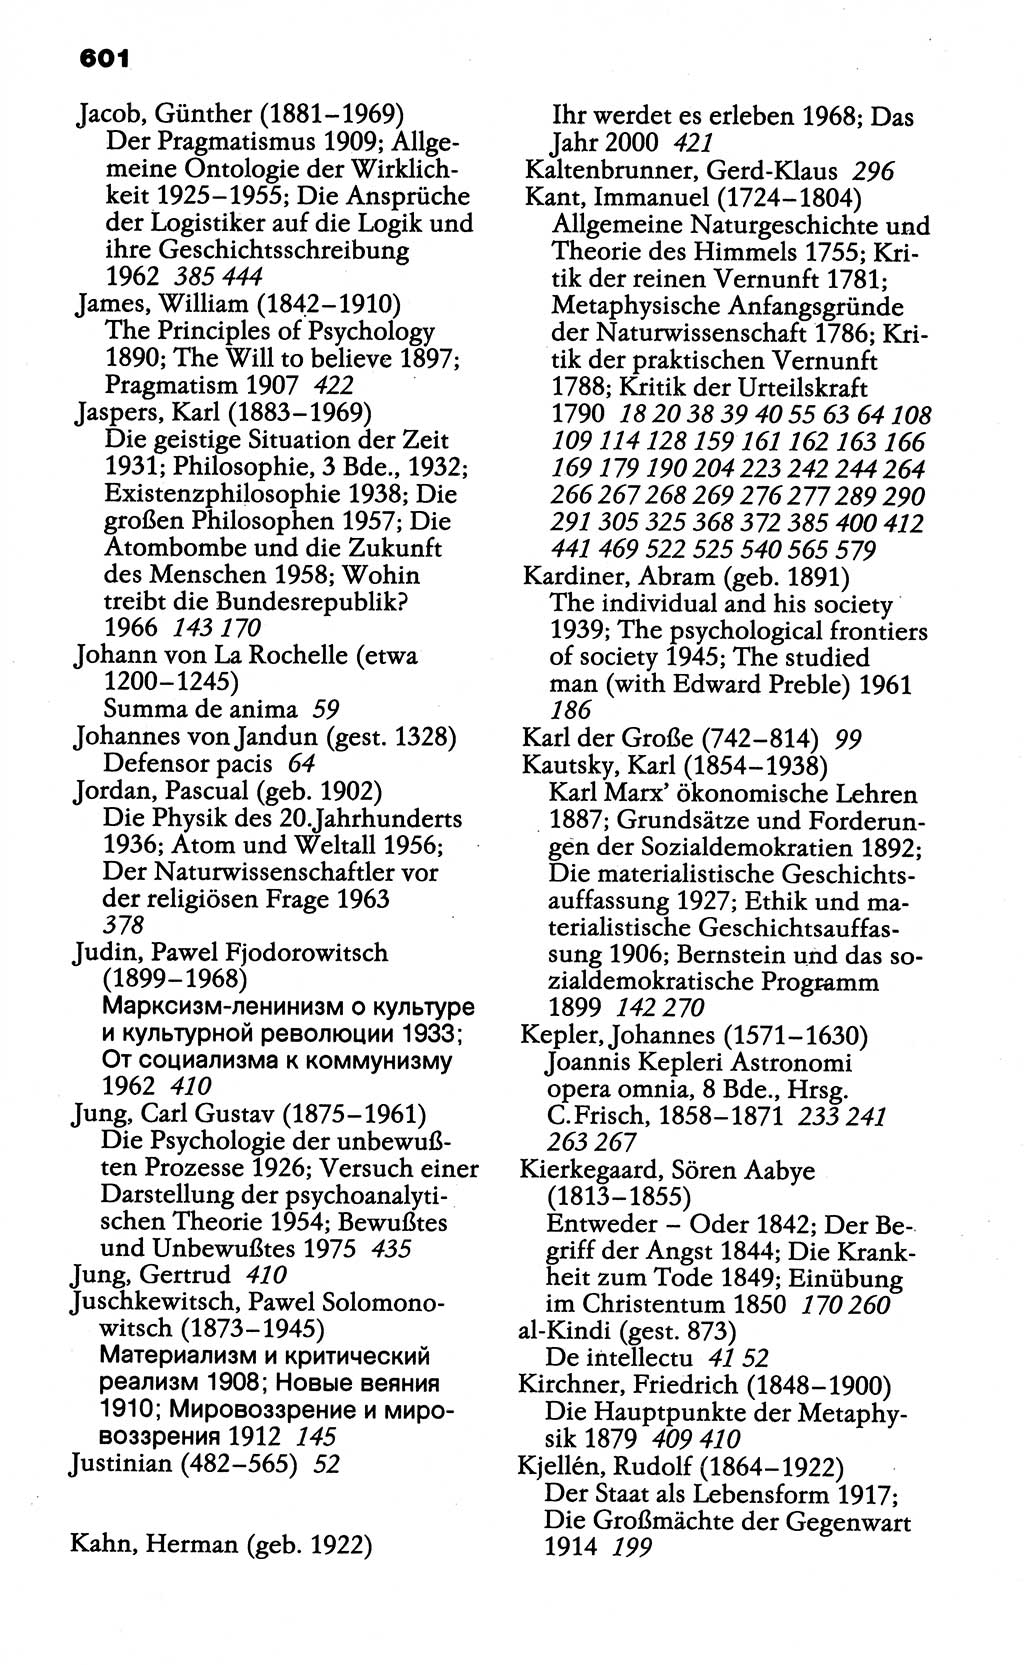 Wörterbuch der marxistisch-leninistischen Philosophie [Deutsche Demokratische Republik (DDR)] 1985, Seite 601 (Wb. ML Phil. DDR 1985, S. 601)